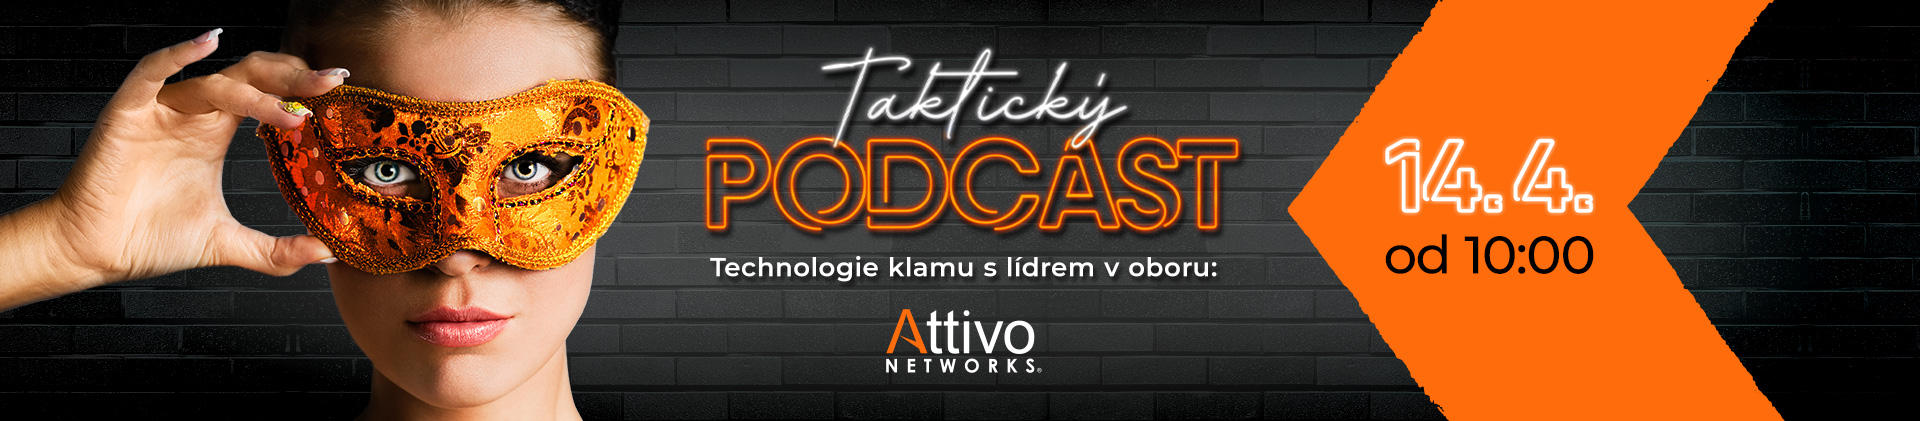 Další Taktický podcast s Attivo Networks